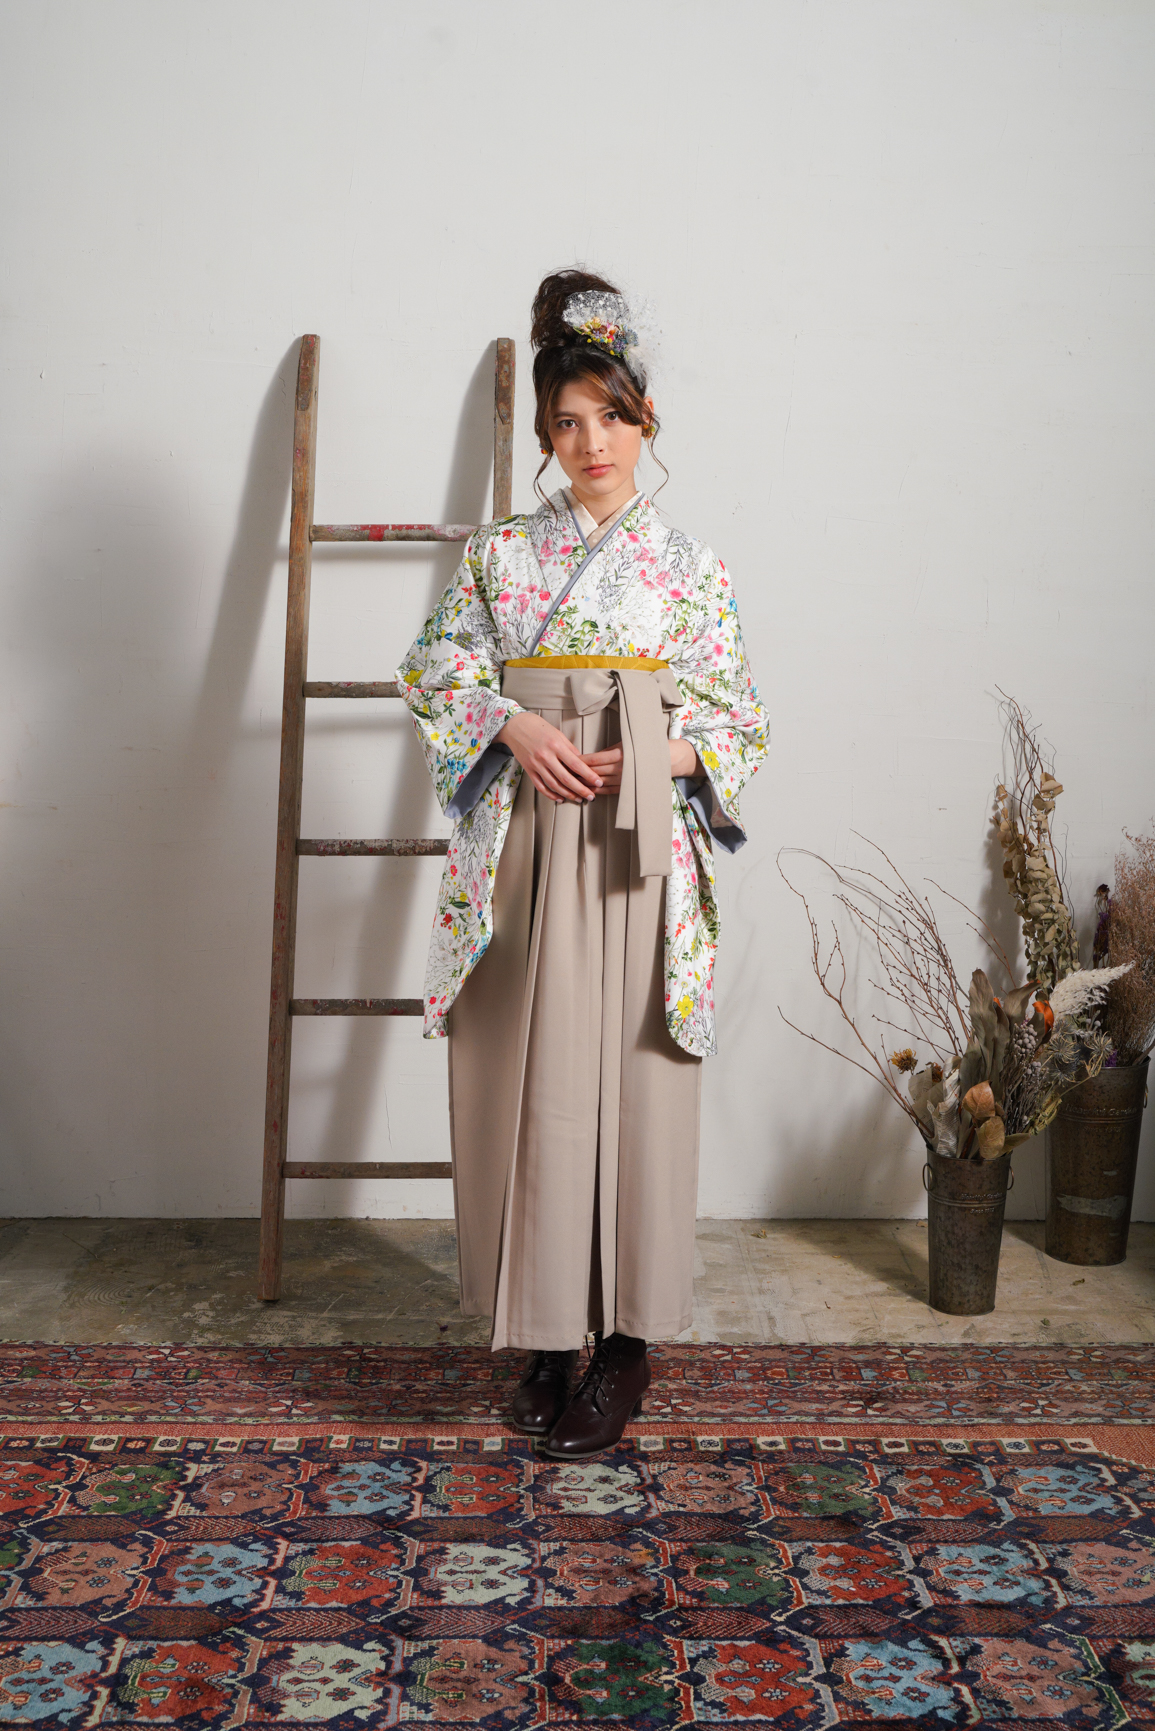 ラフィネモカ（Raffine Mocha）ブランドの、白地にカラフルな総小花柄の二尺袖と、ベージュ色の袴の女性用卒業式袴を着用した全身写真